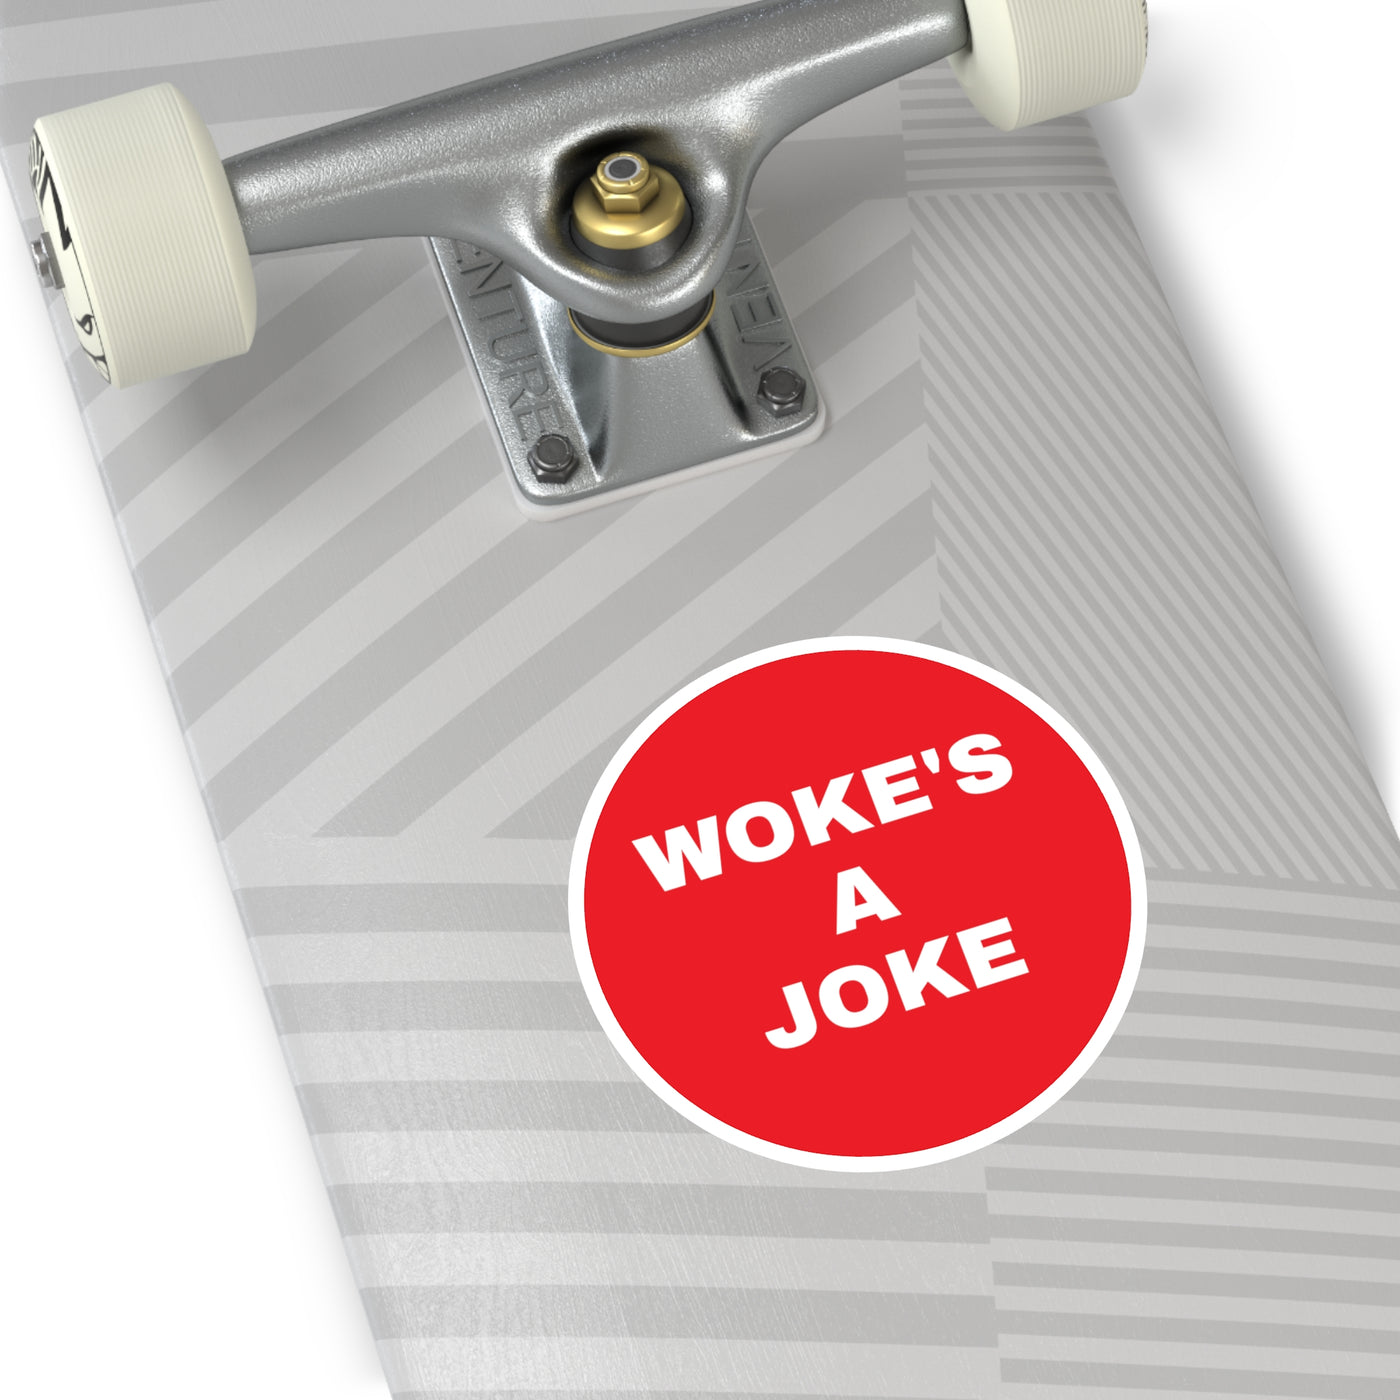 WOKE'S A JOKE - Patriotic Sticker